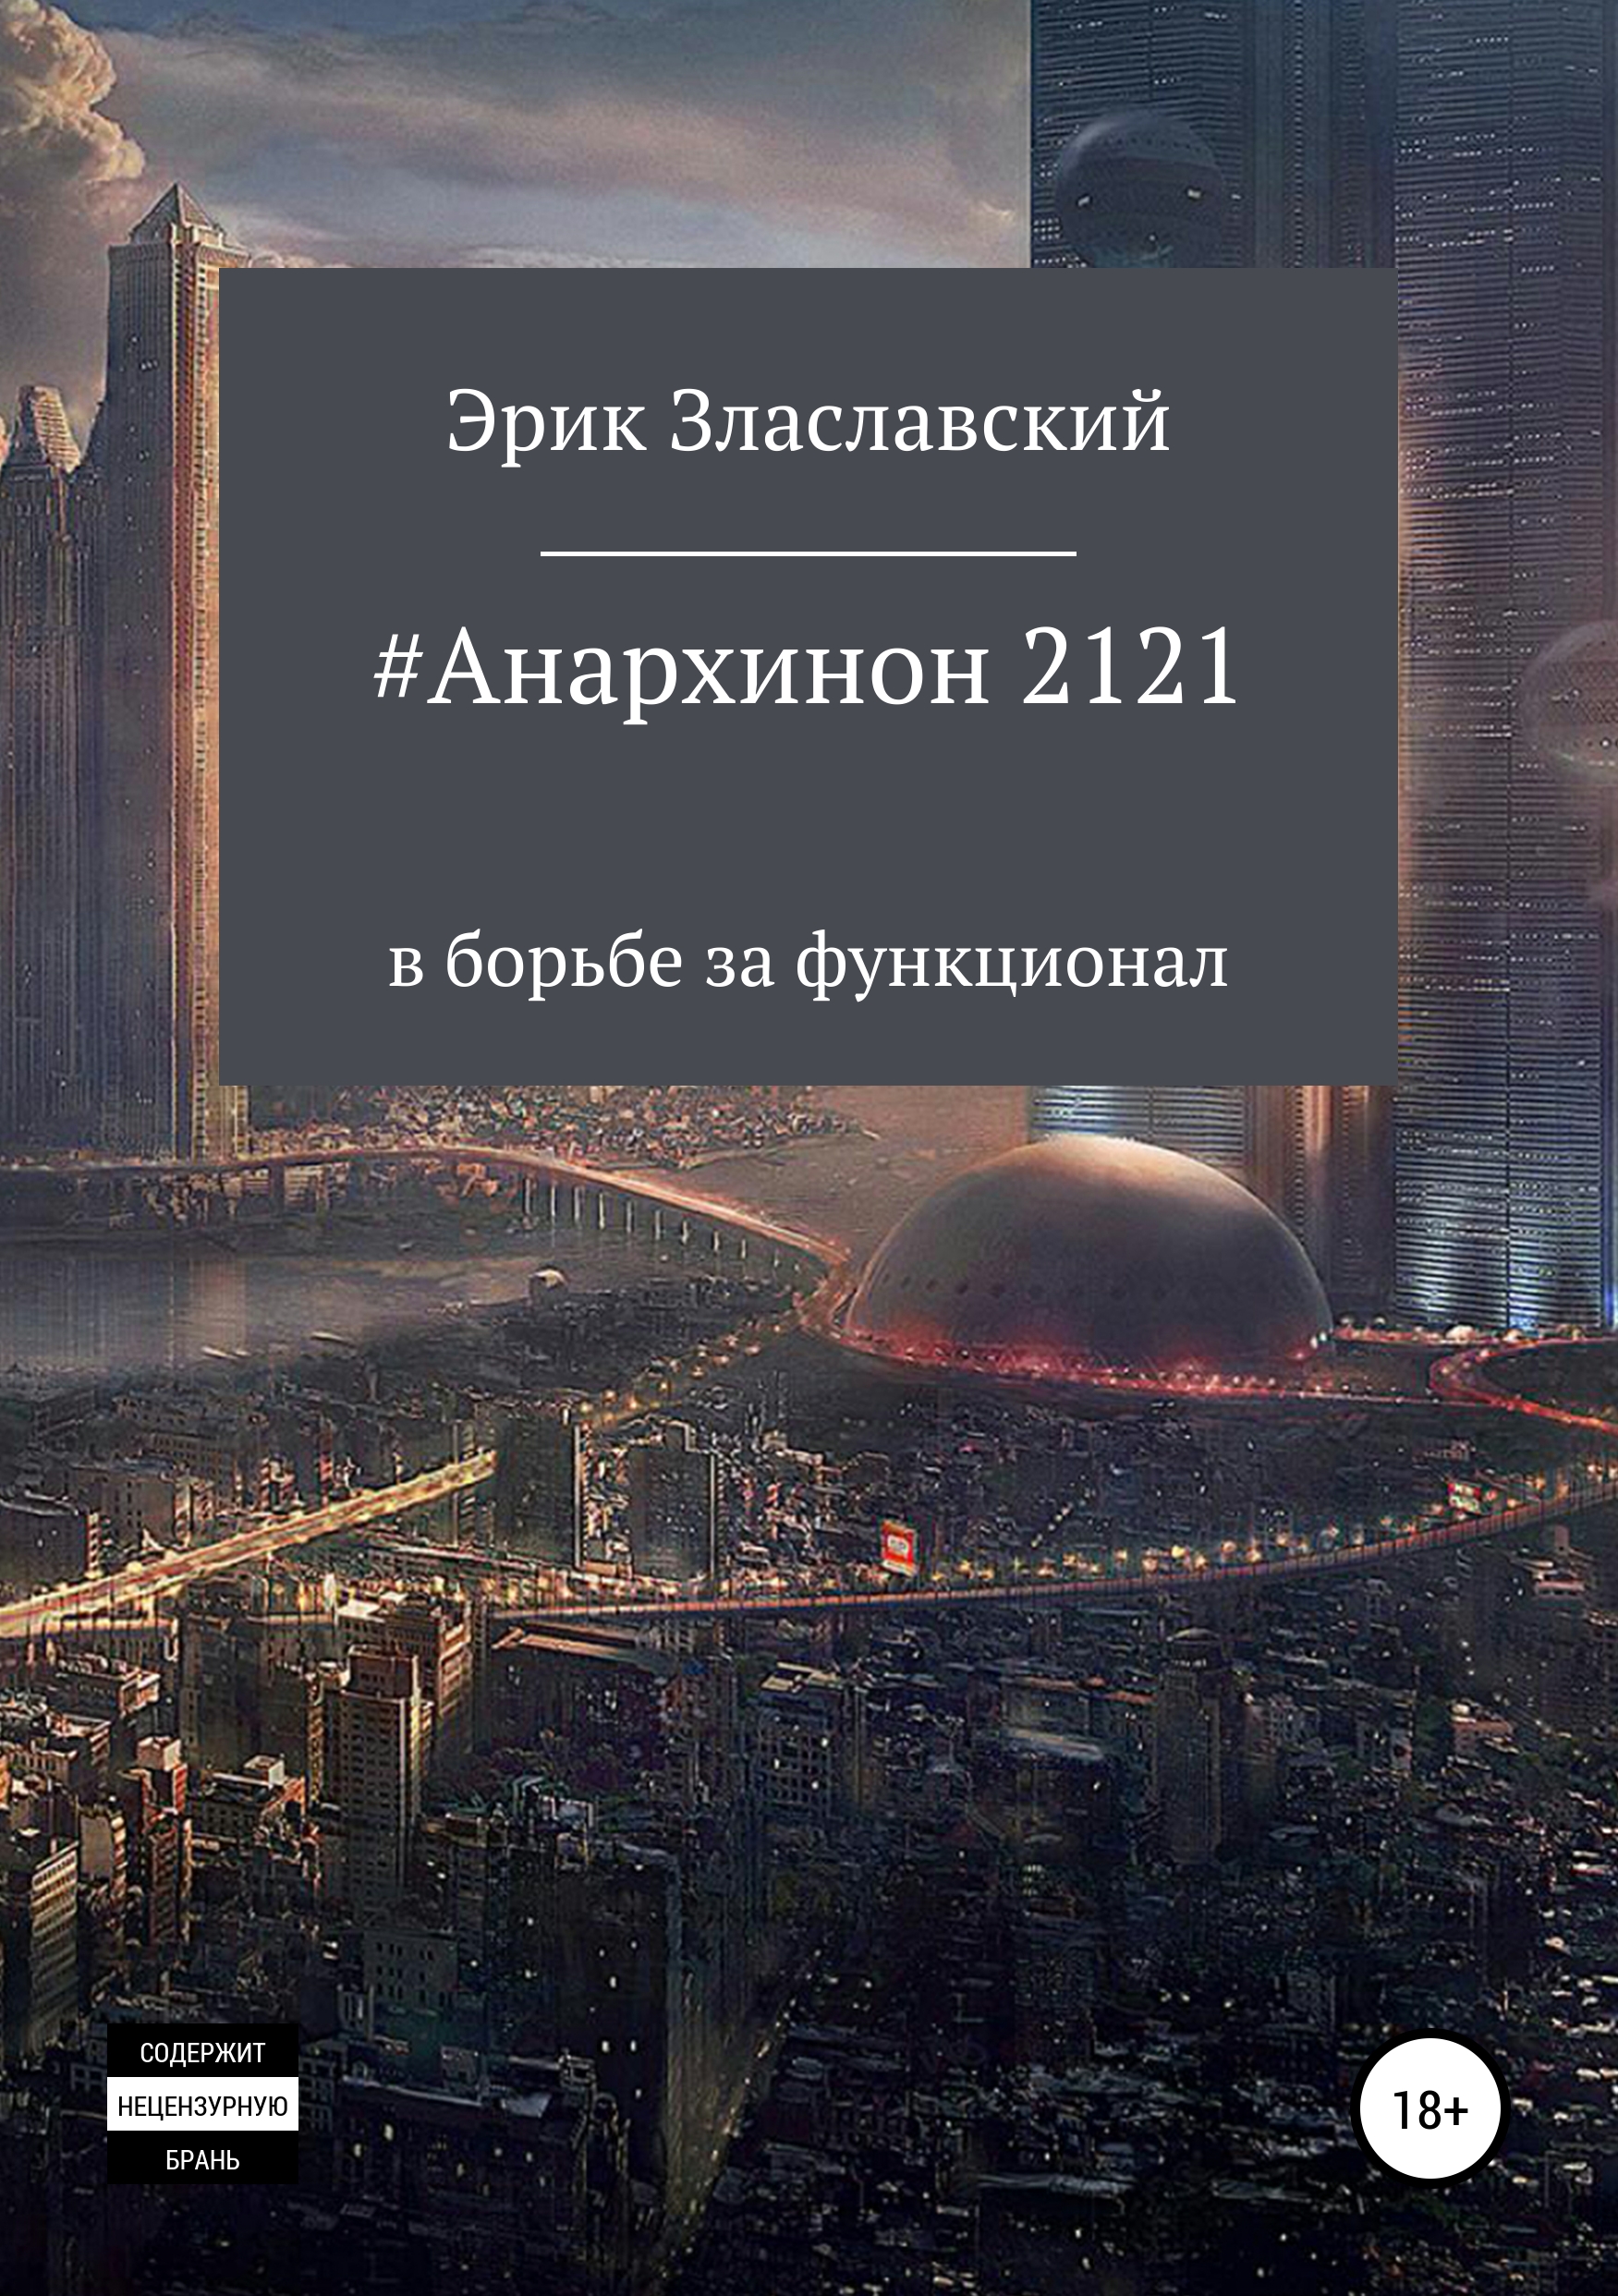 Скачать #Анархинон2121 в борьбе за функционал - Эрик Злаславский